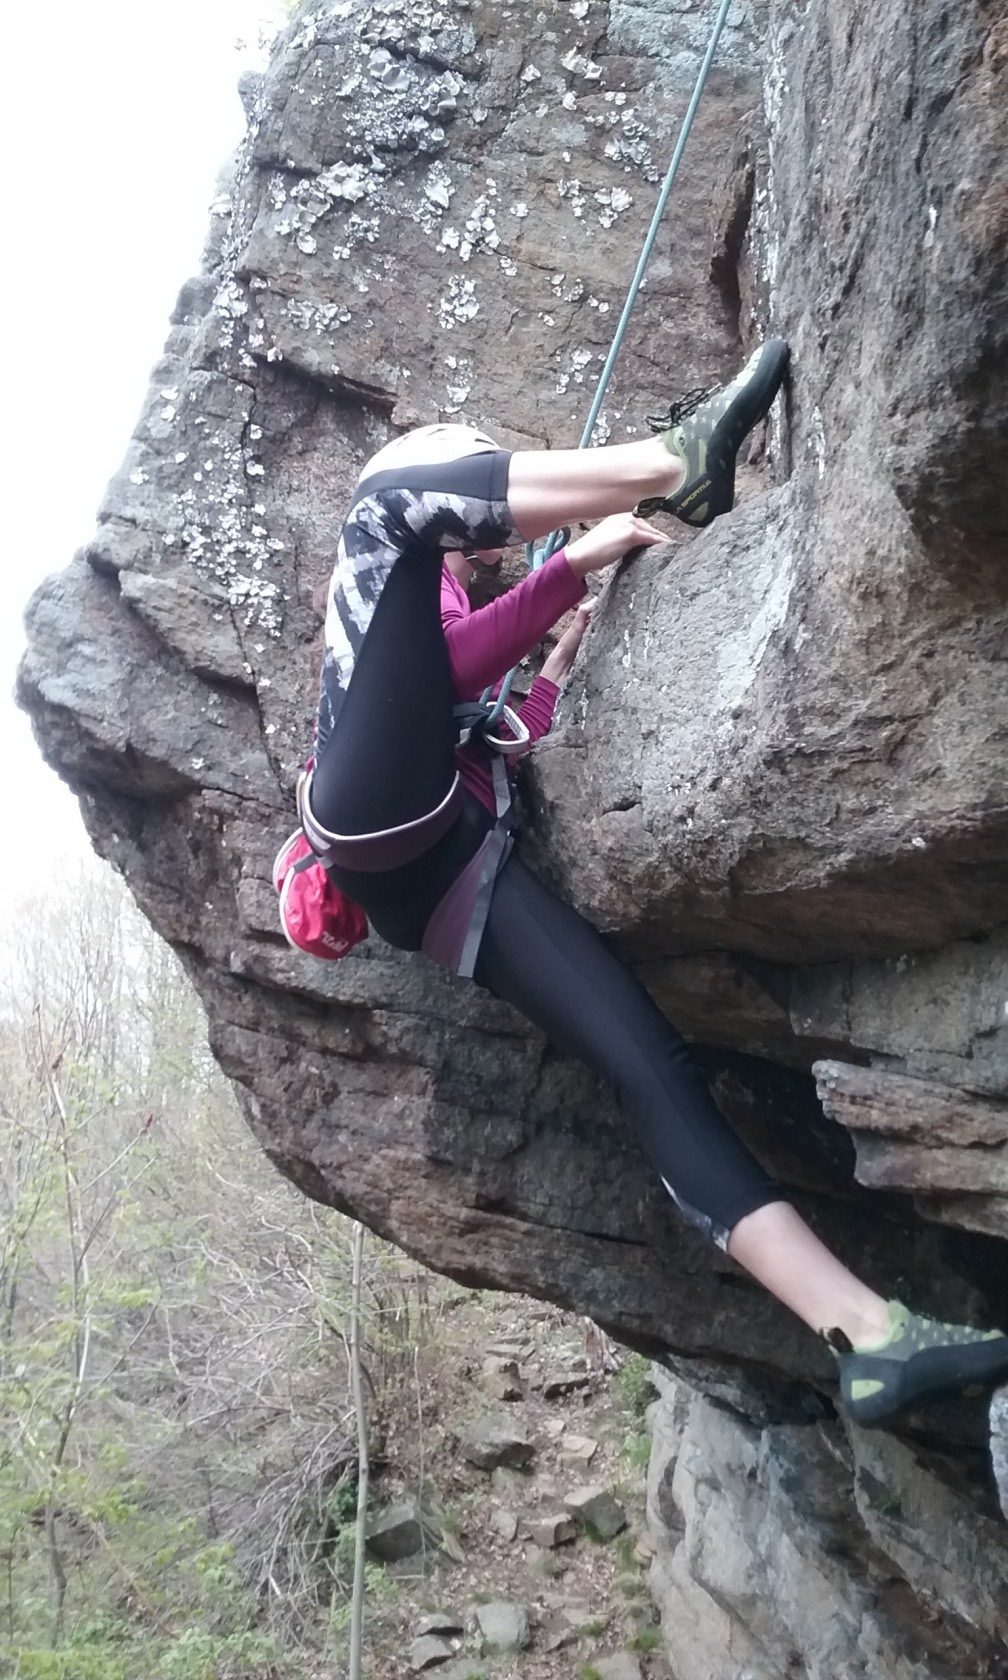 NYSEF Ski Racer Sarah Coombs enjoys rock climbing